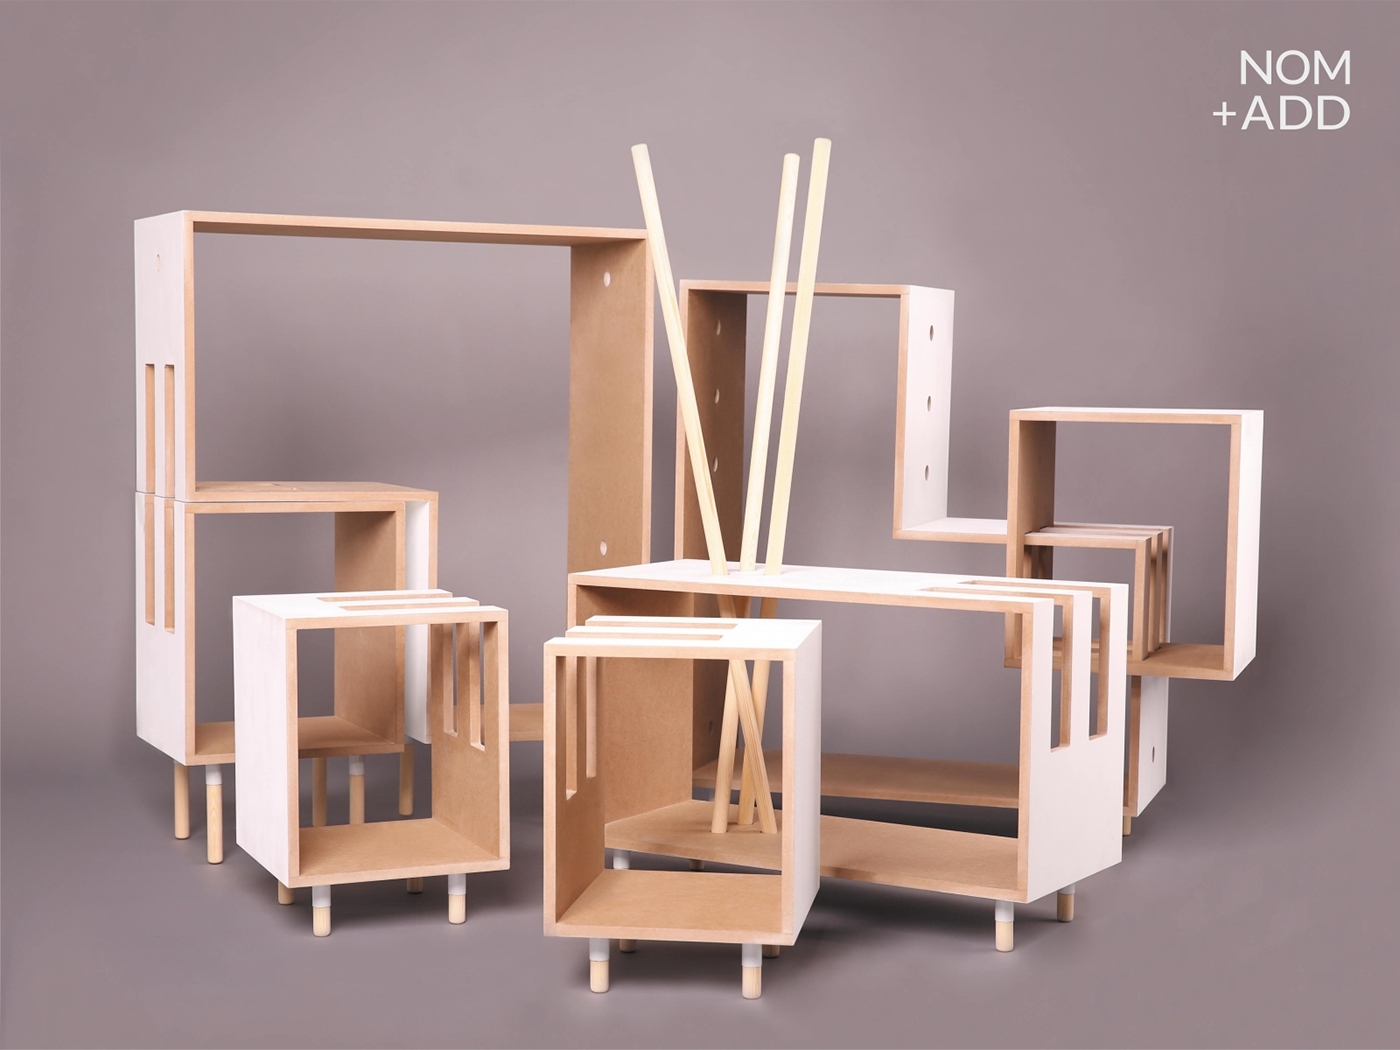 模块化的家具设计